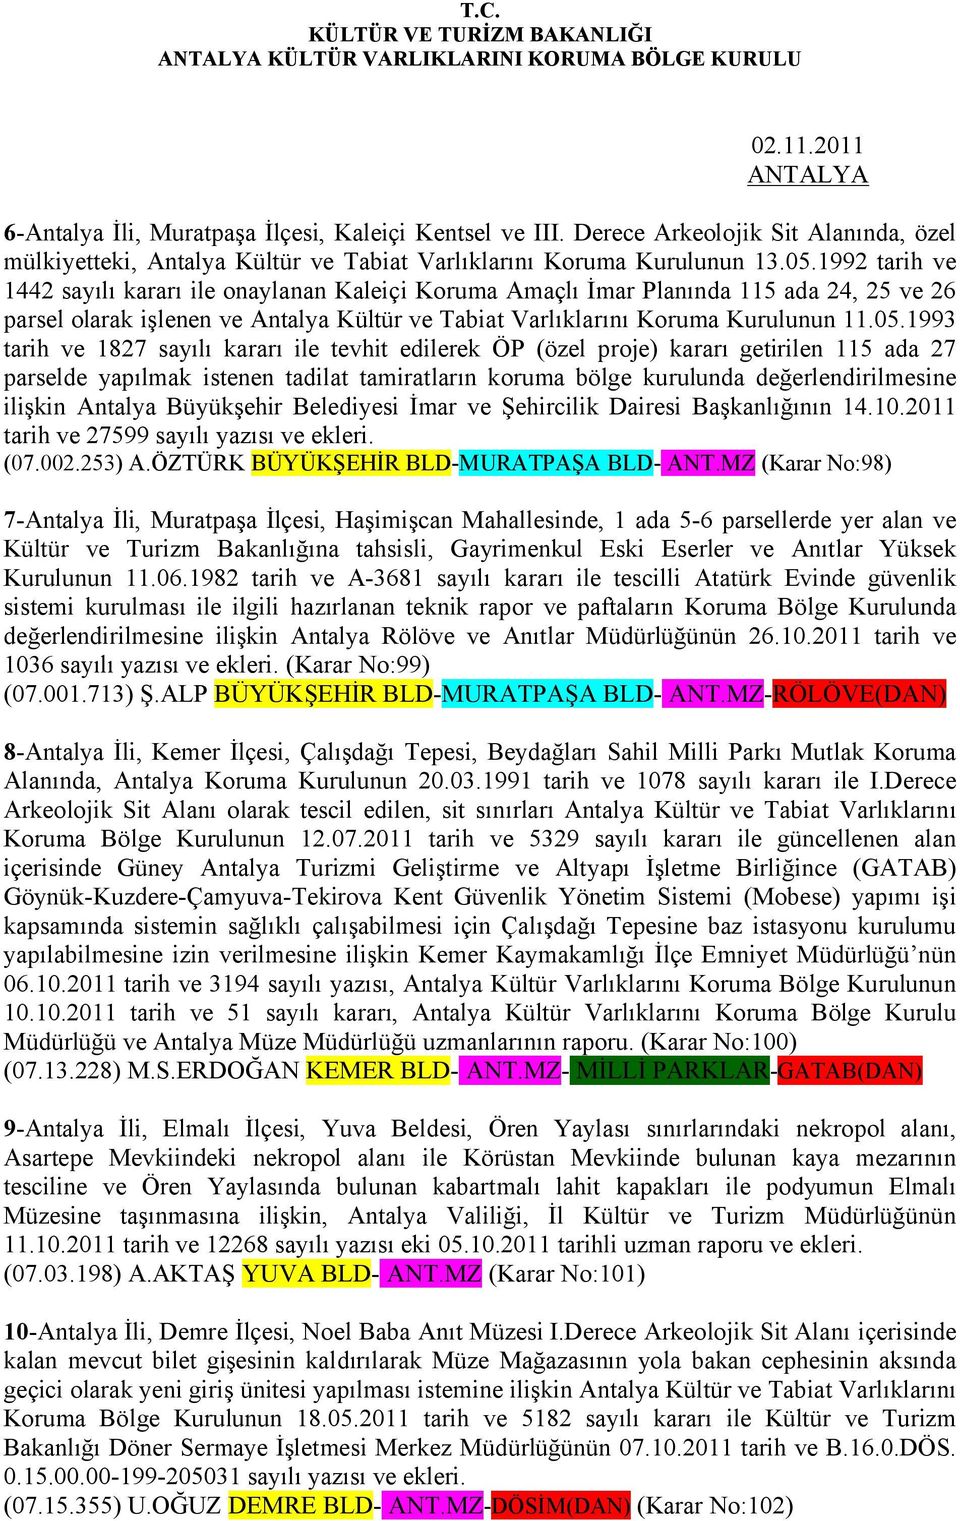 1992 tarih ve 1442 sayılı kararı ile onaylanan Kaleiçi Koruma Amaçlı İmar Planında 115 ada 24, 25 ve 26 parsel olarak işlenen ve Antalya Kültür ve Tabiat Varlıklarını Koruma Kurulunun 11.05.